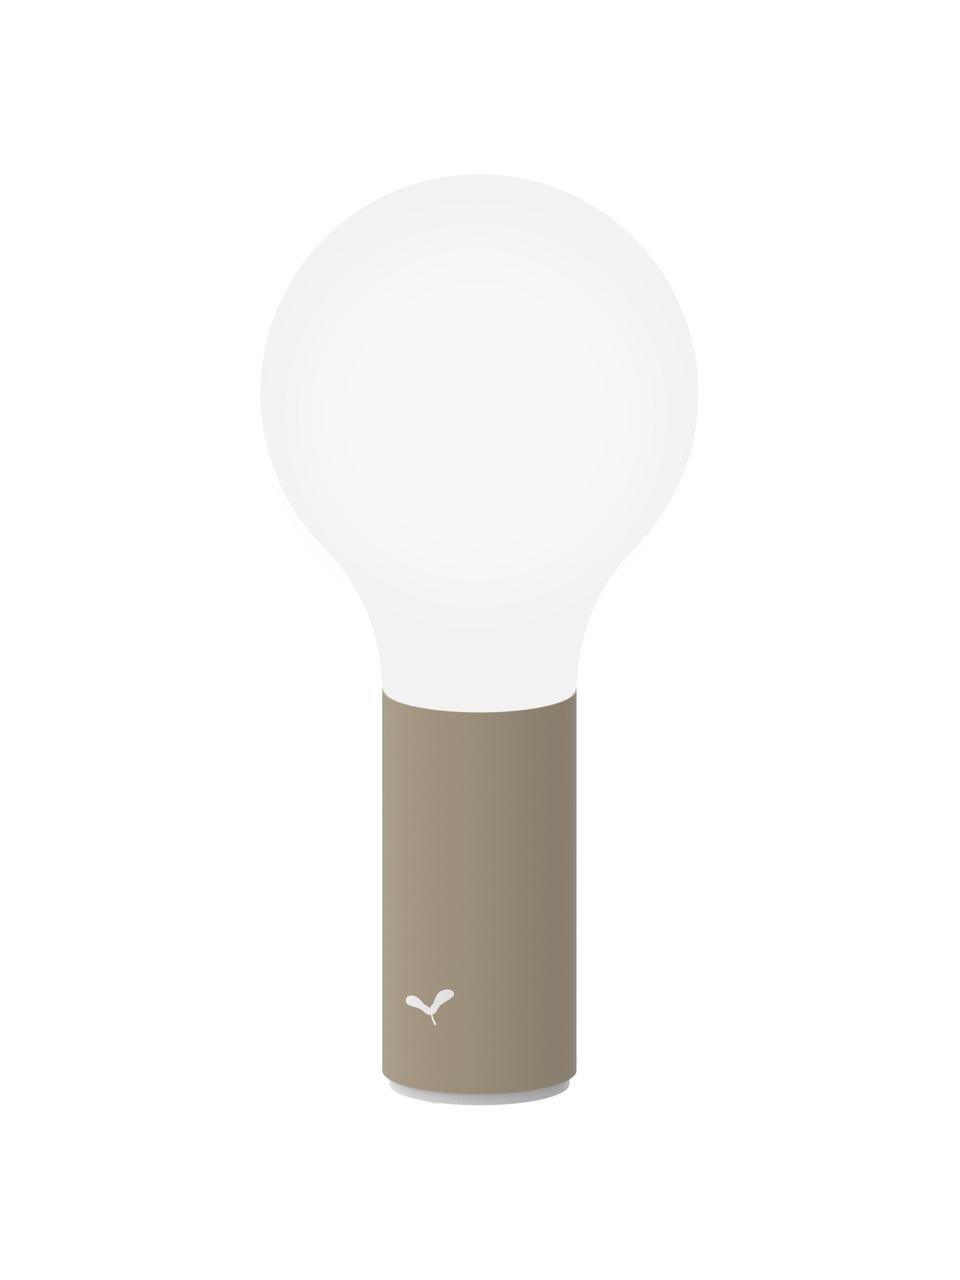 Lampe d'extérieur mobile Aplô, Blanc, brun muscade